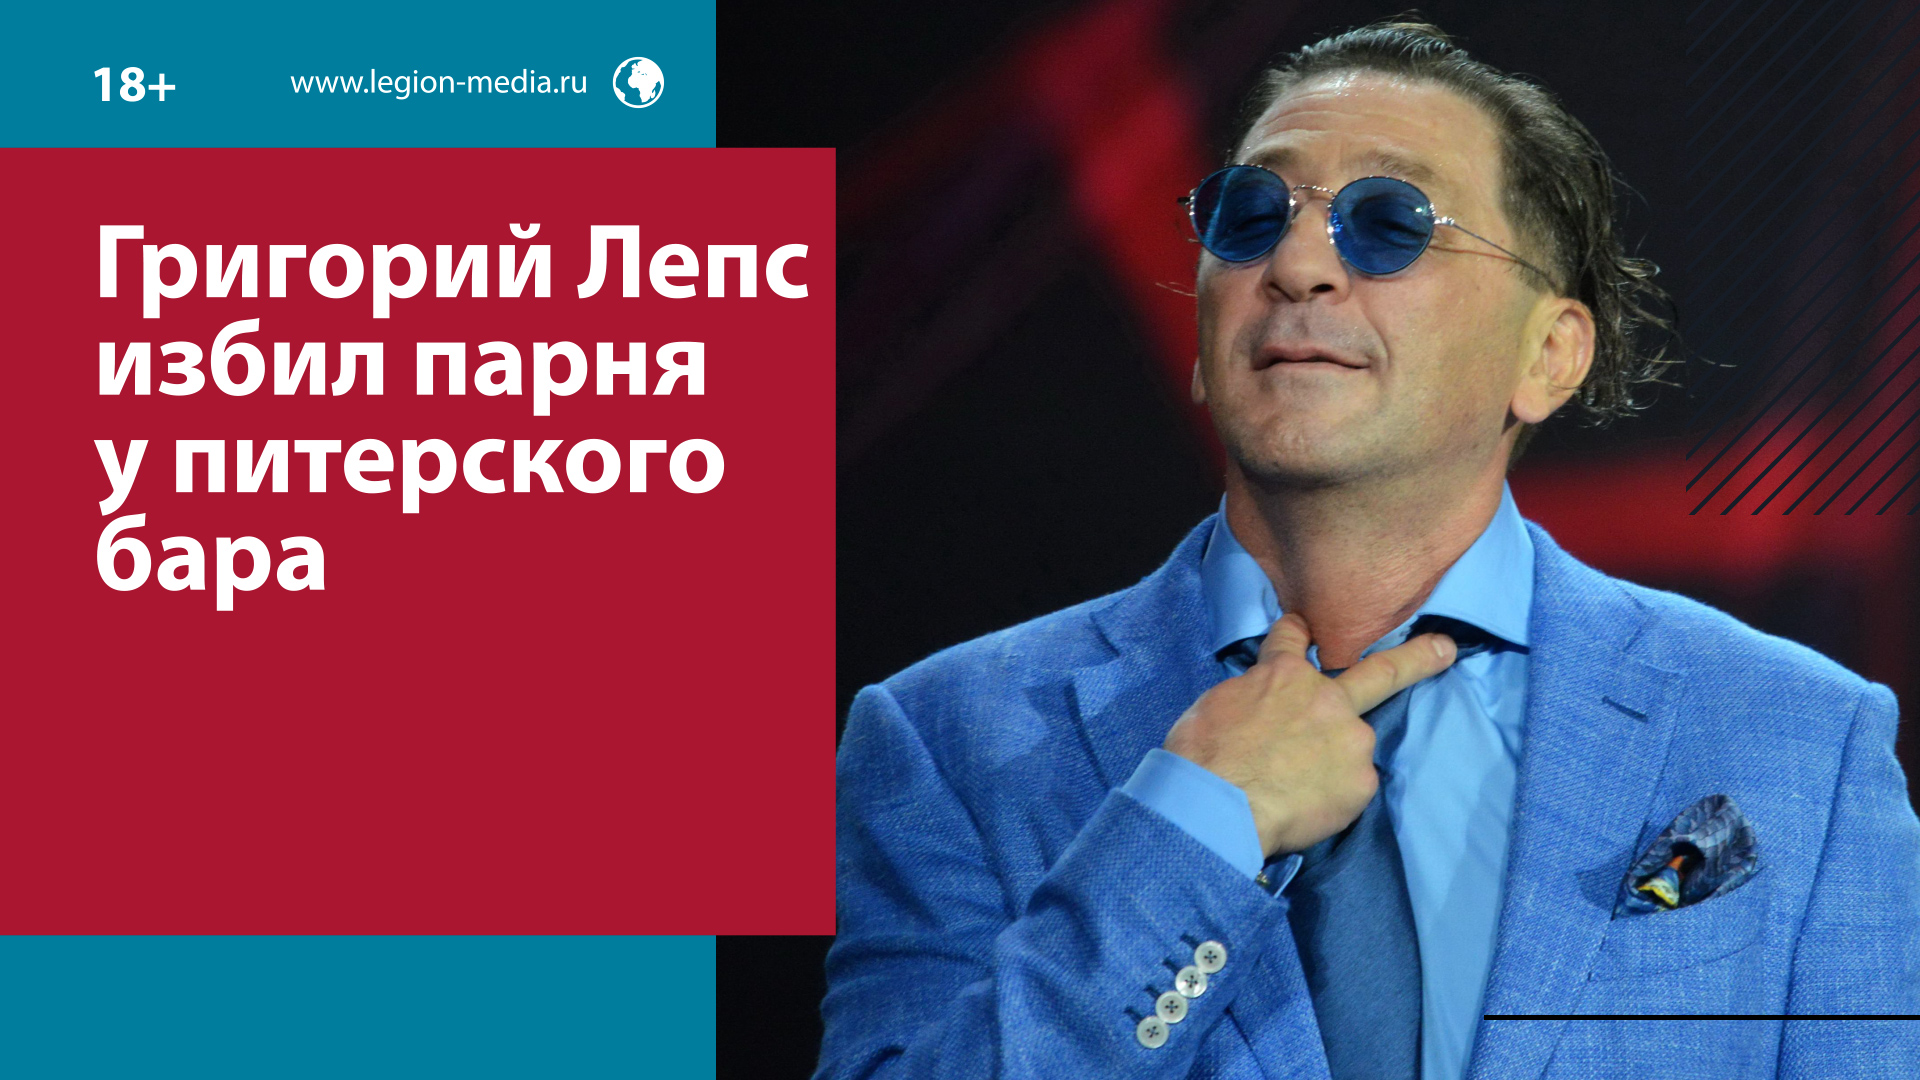 Григорий Лепс разбил нос посетителю бара в Санкт-Петербурге — Москва FM